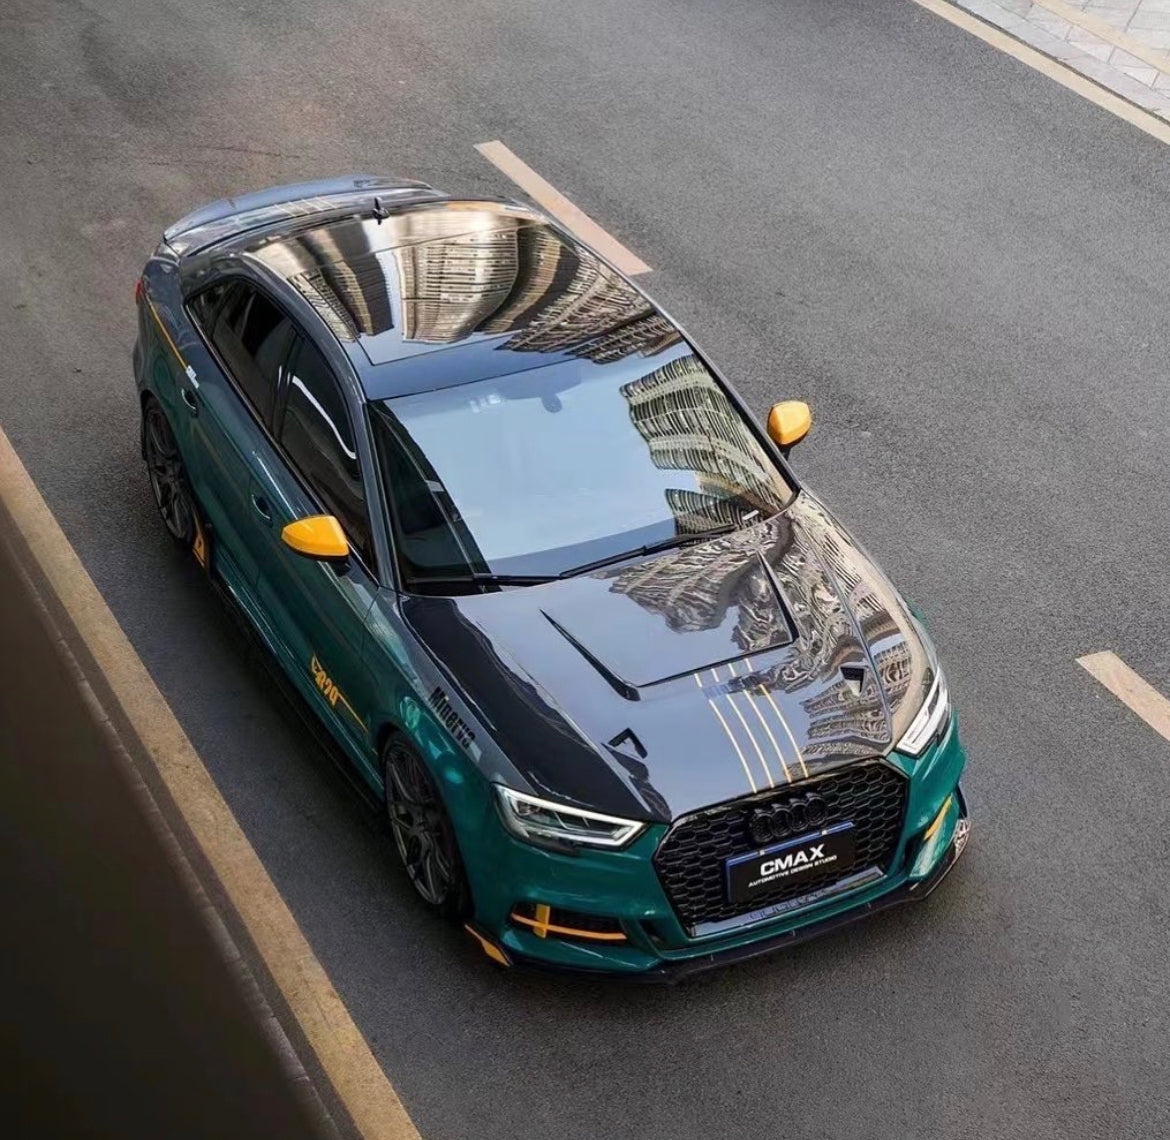 CMST Carbon Fiber Hood Bonnet Ver.4 for Audi RS3 2018-2020 & 2014-2020 A3 & A3 S Line & S3